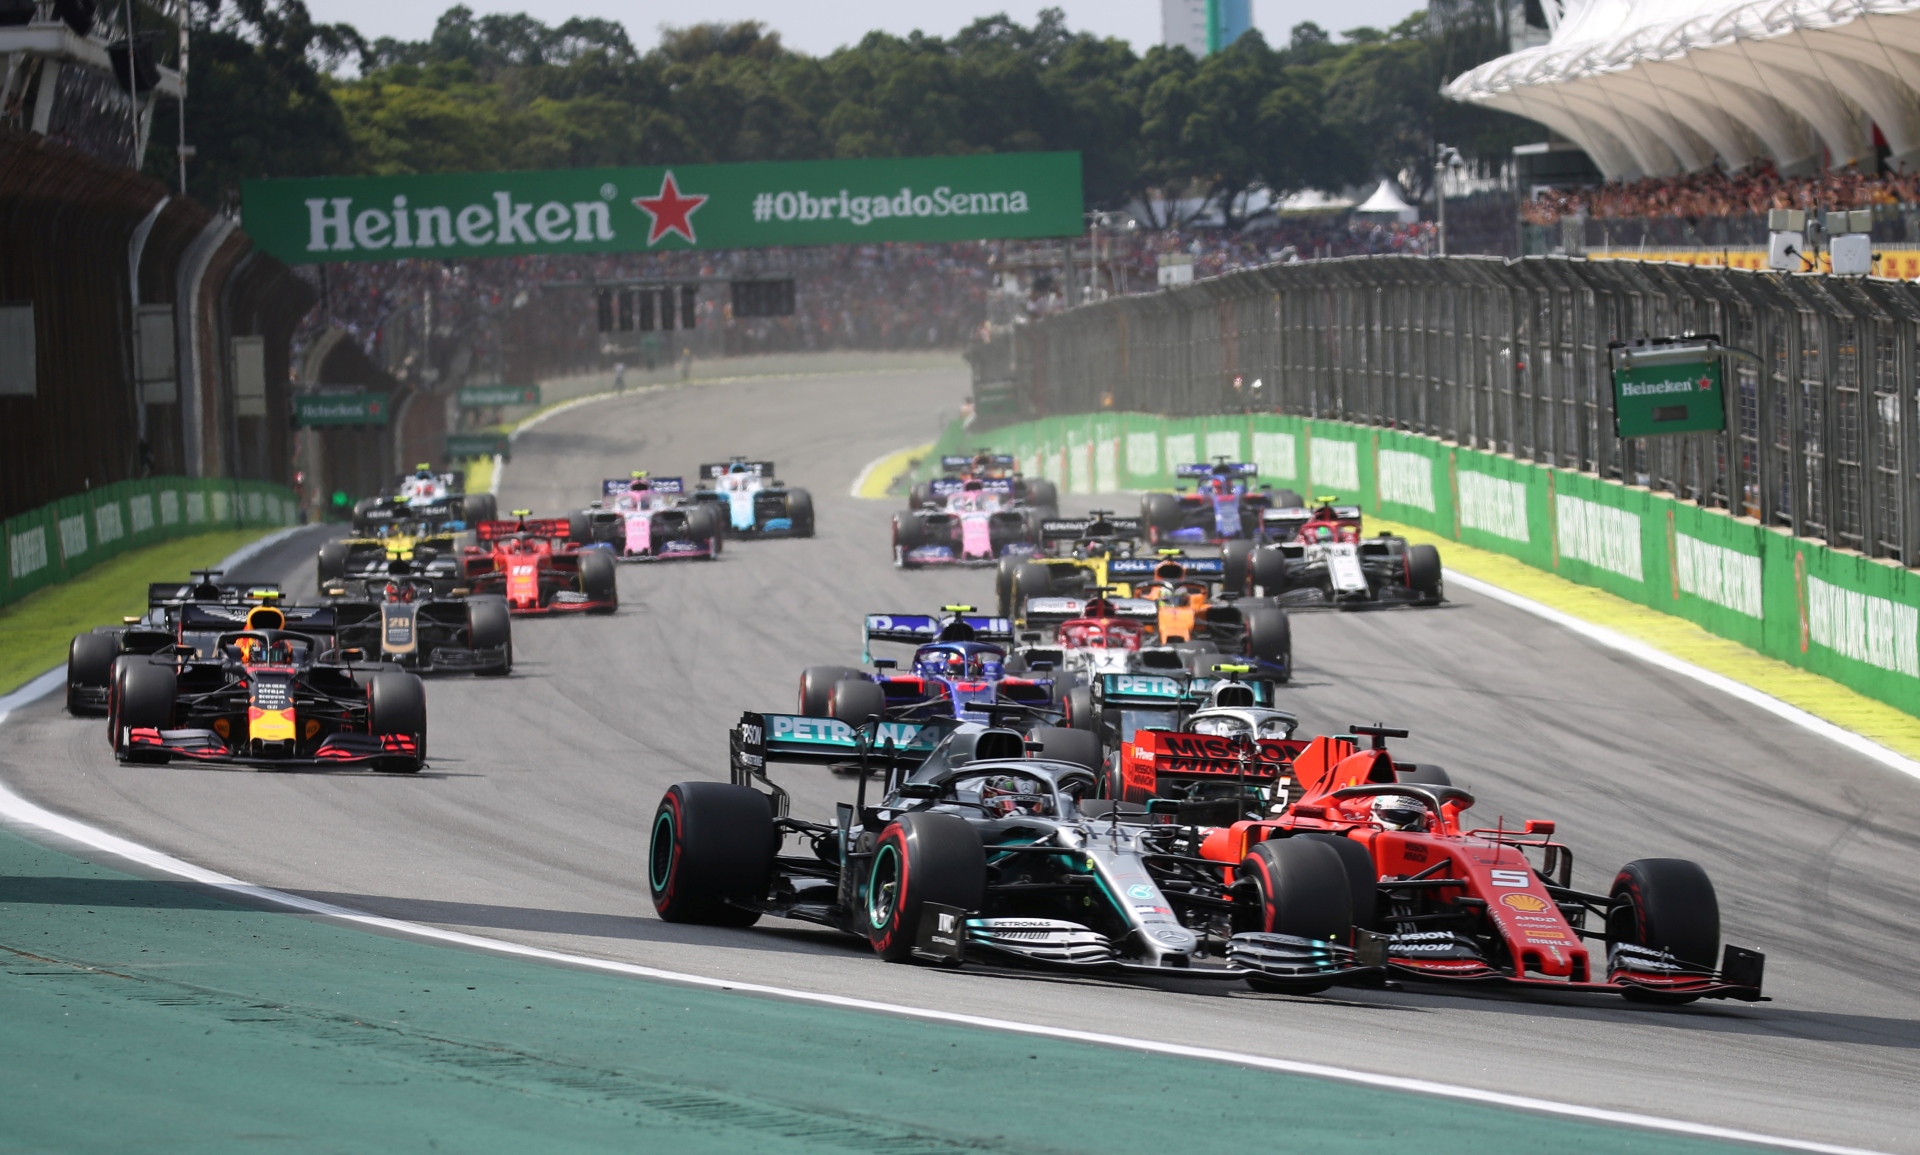 Corrida de F1 no Autódromo de Interlagos, em 2019